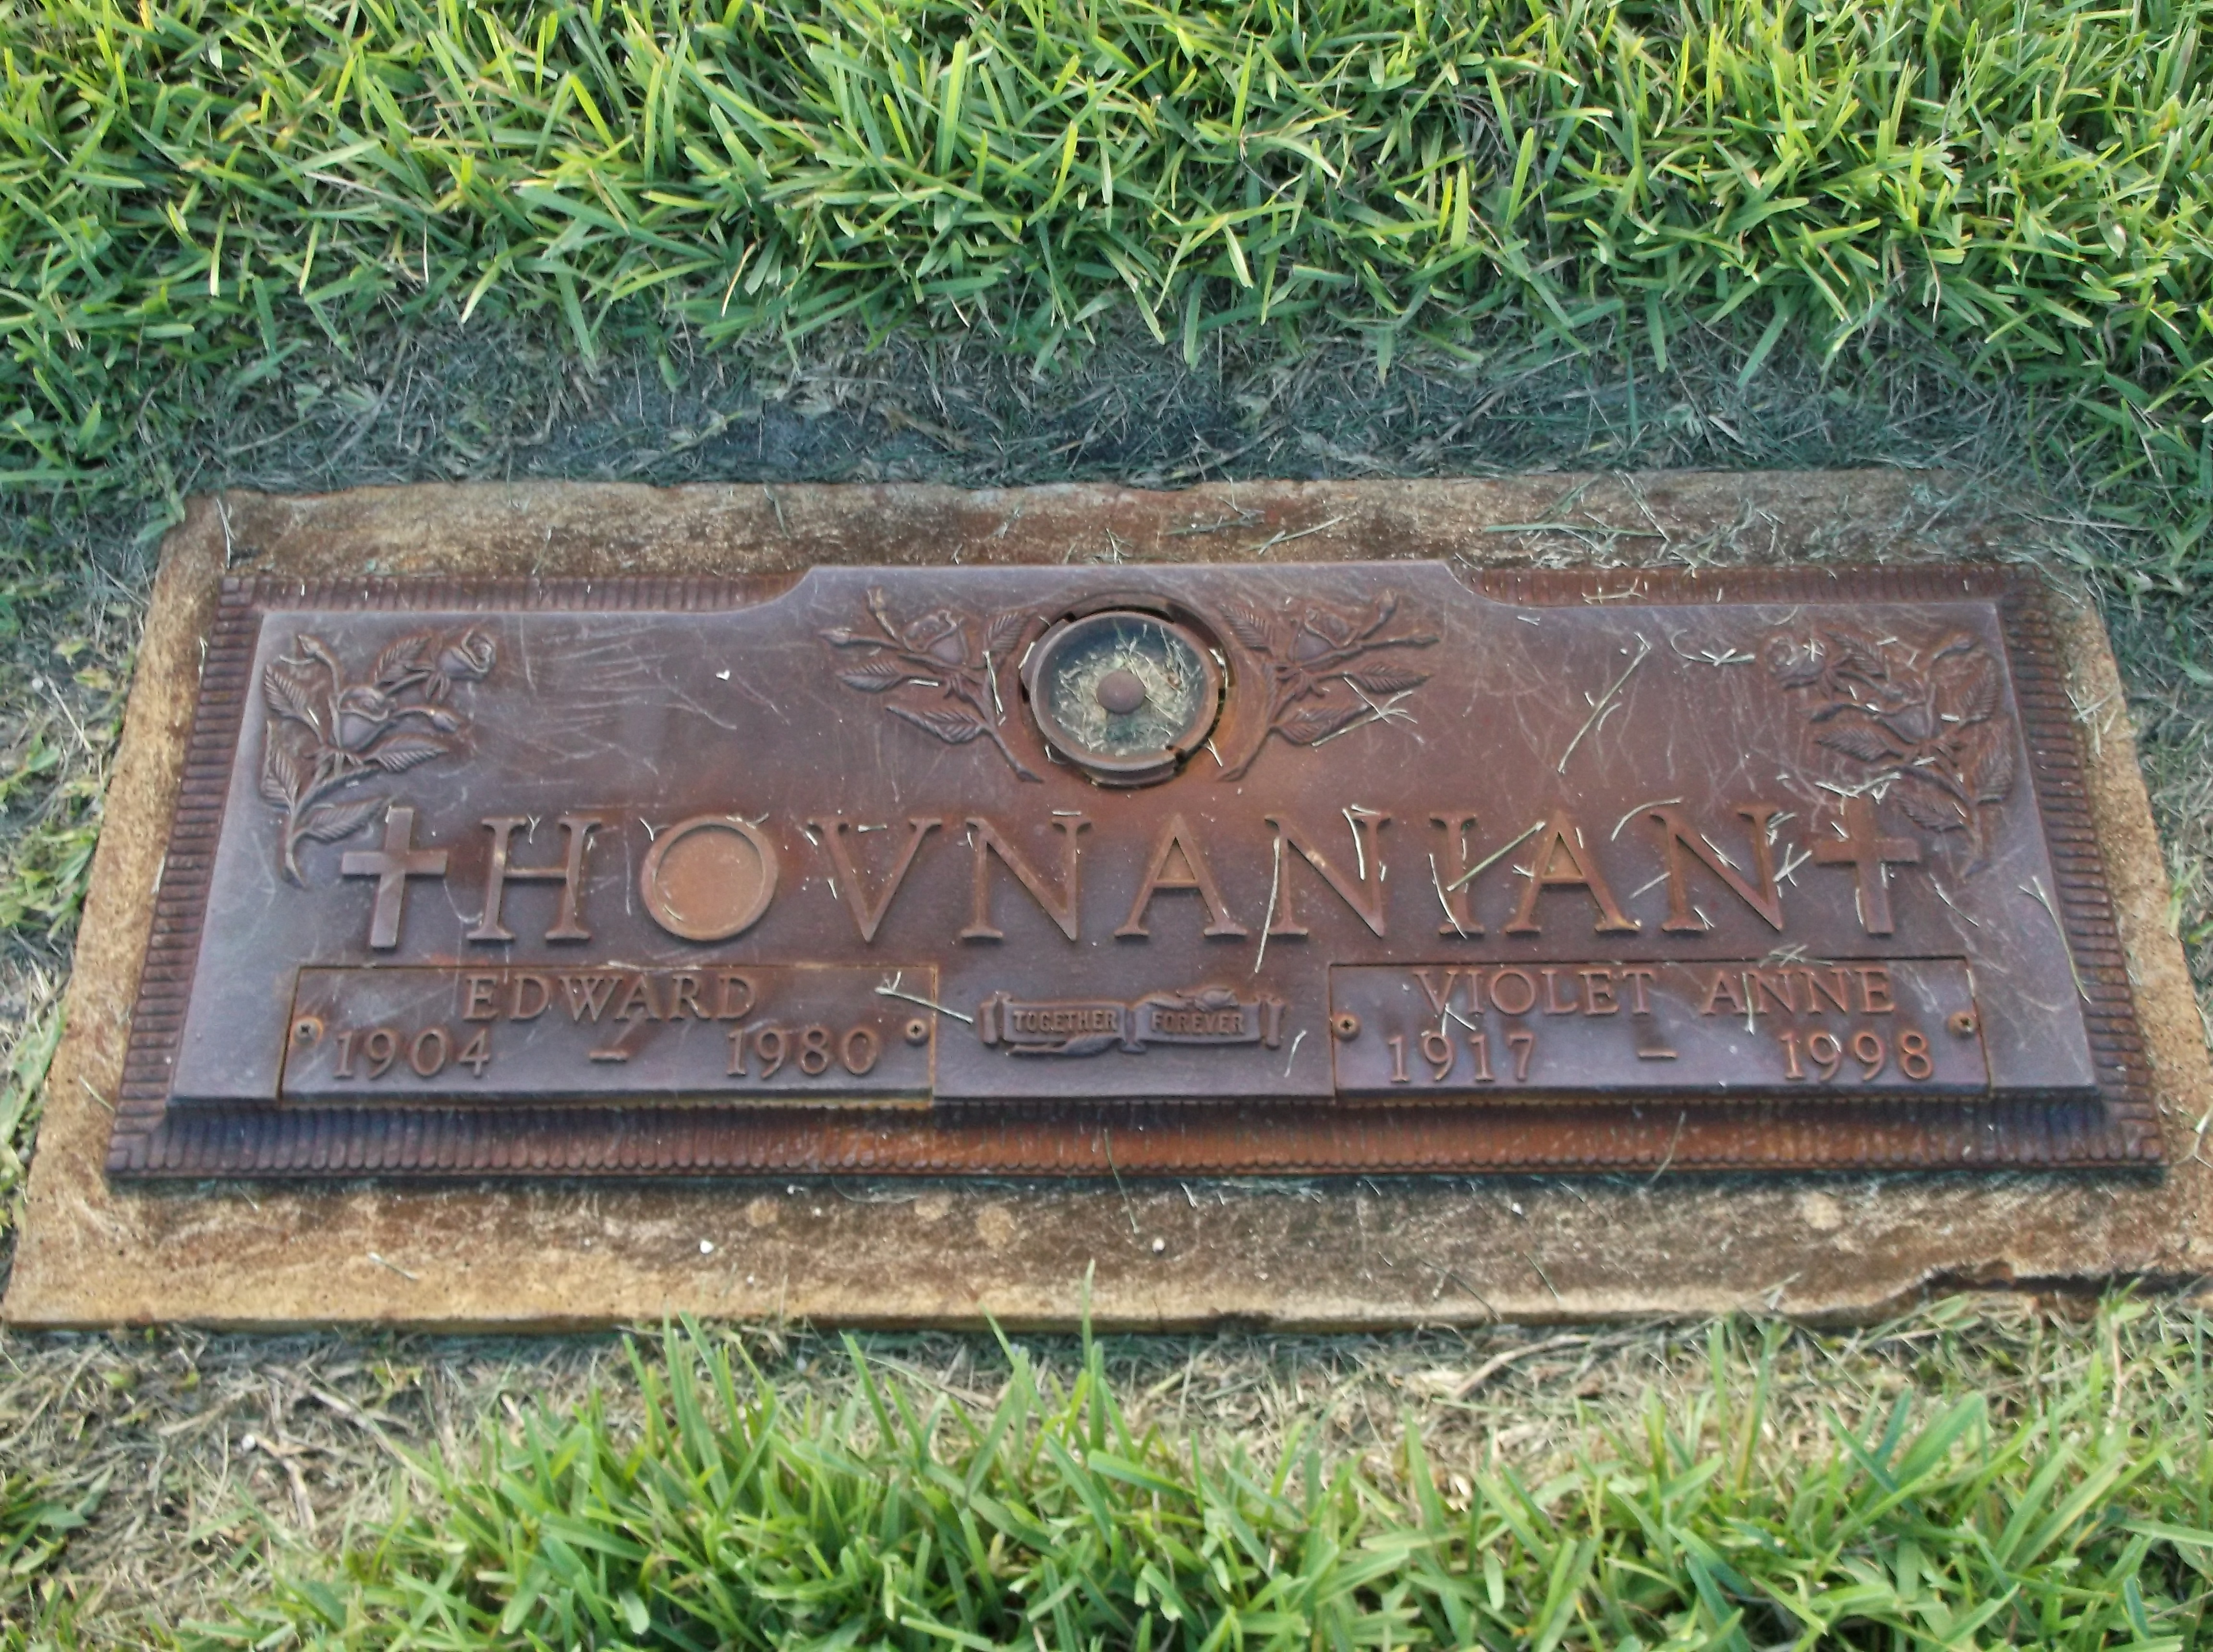 Edward Hovnanian